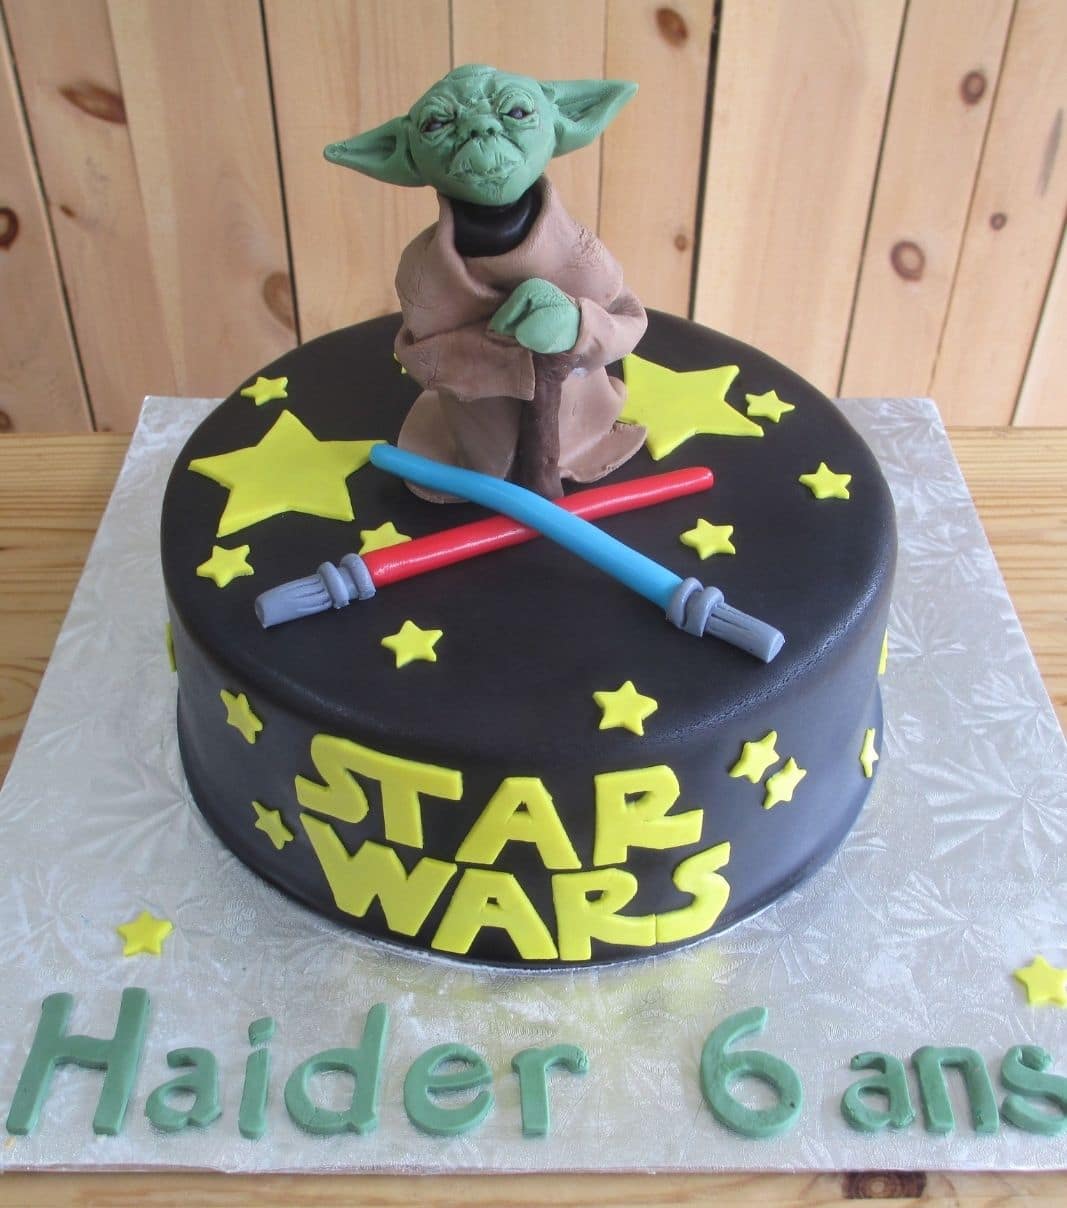 Gâteau d'anniversaire sur mesure des 6 ans de Haider: gâteau à thématique Star Wars avec une couverture en fondant noire et décoré d'étoiles, de sabres laser et d'une figurine de Yoda en fondant.